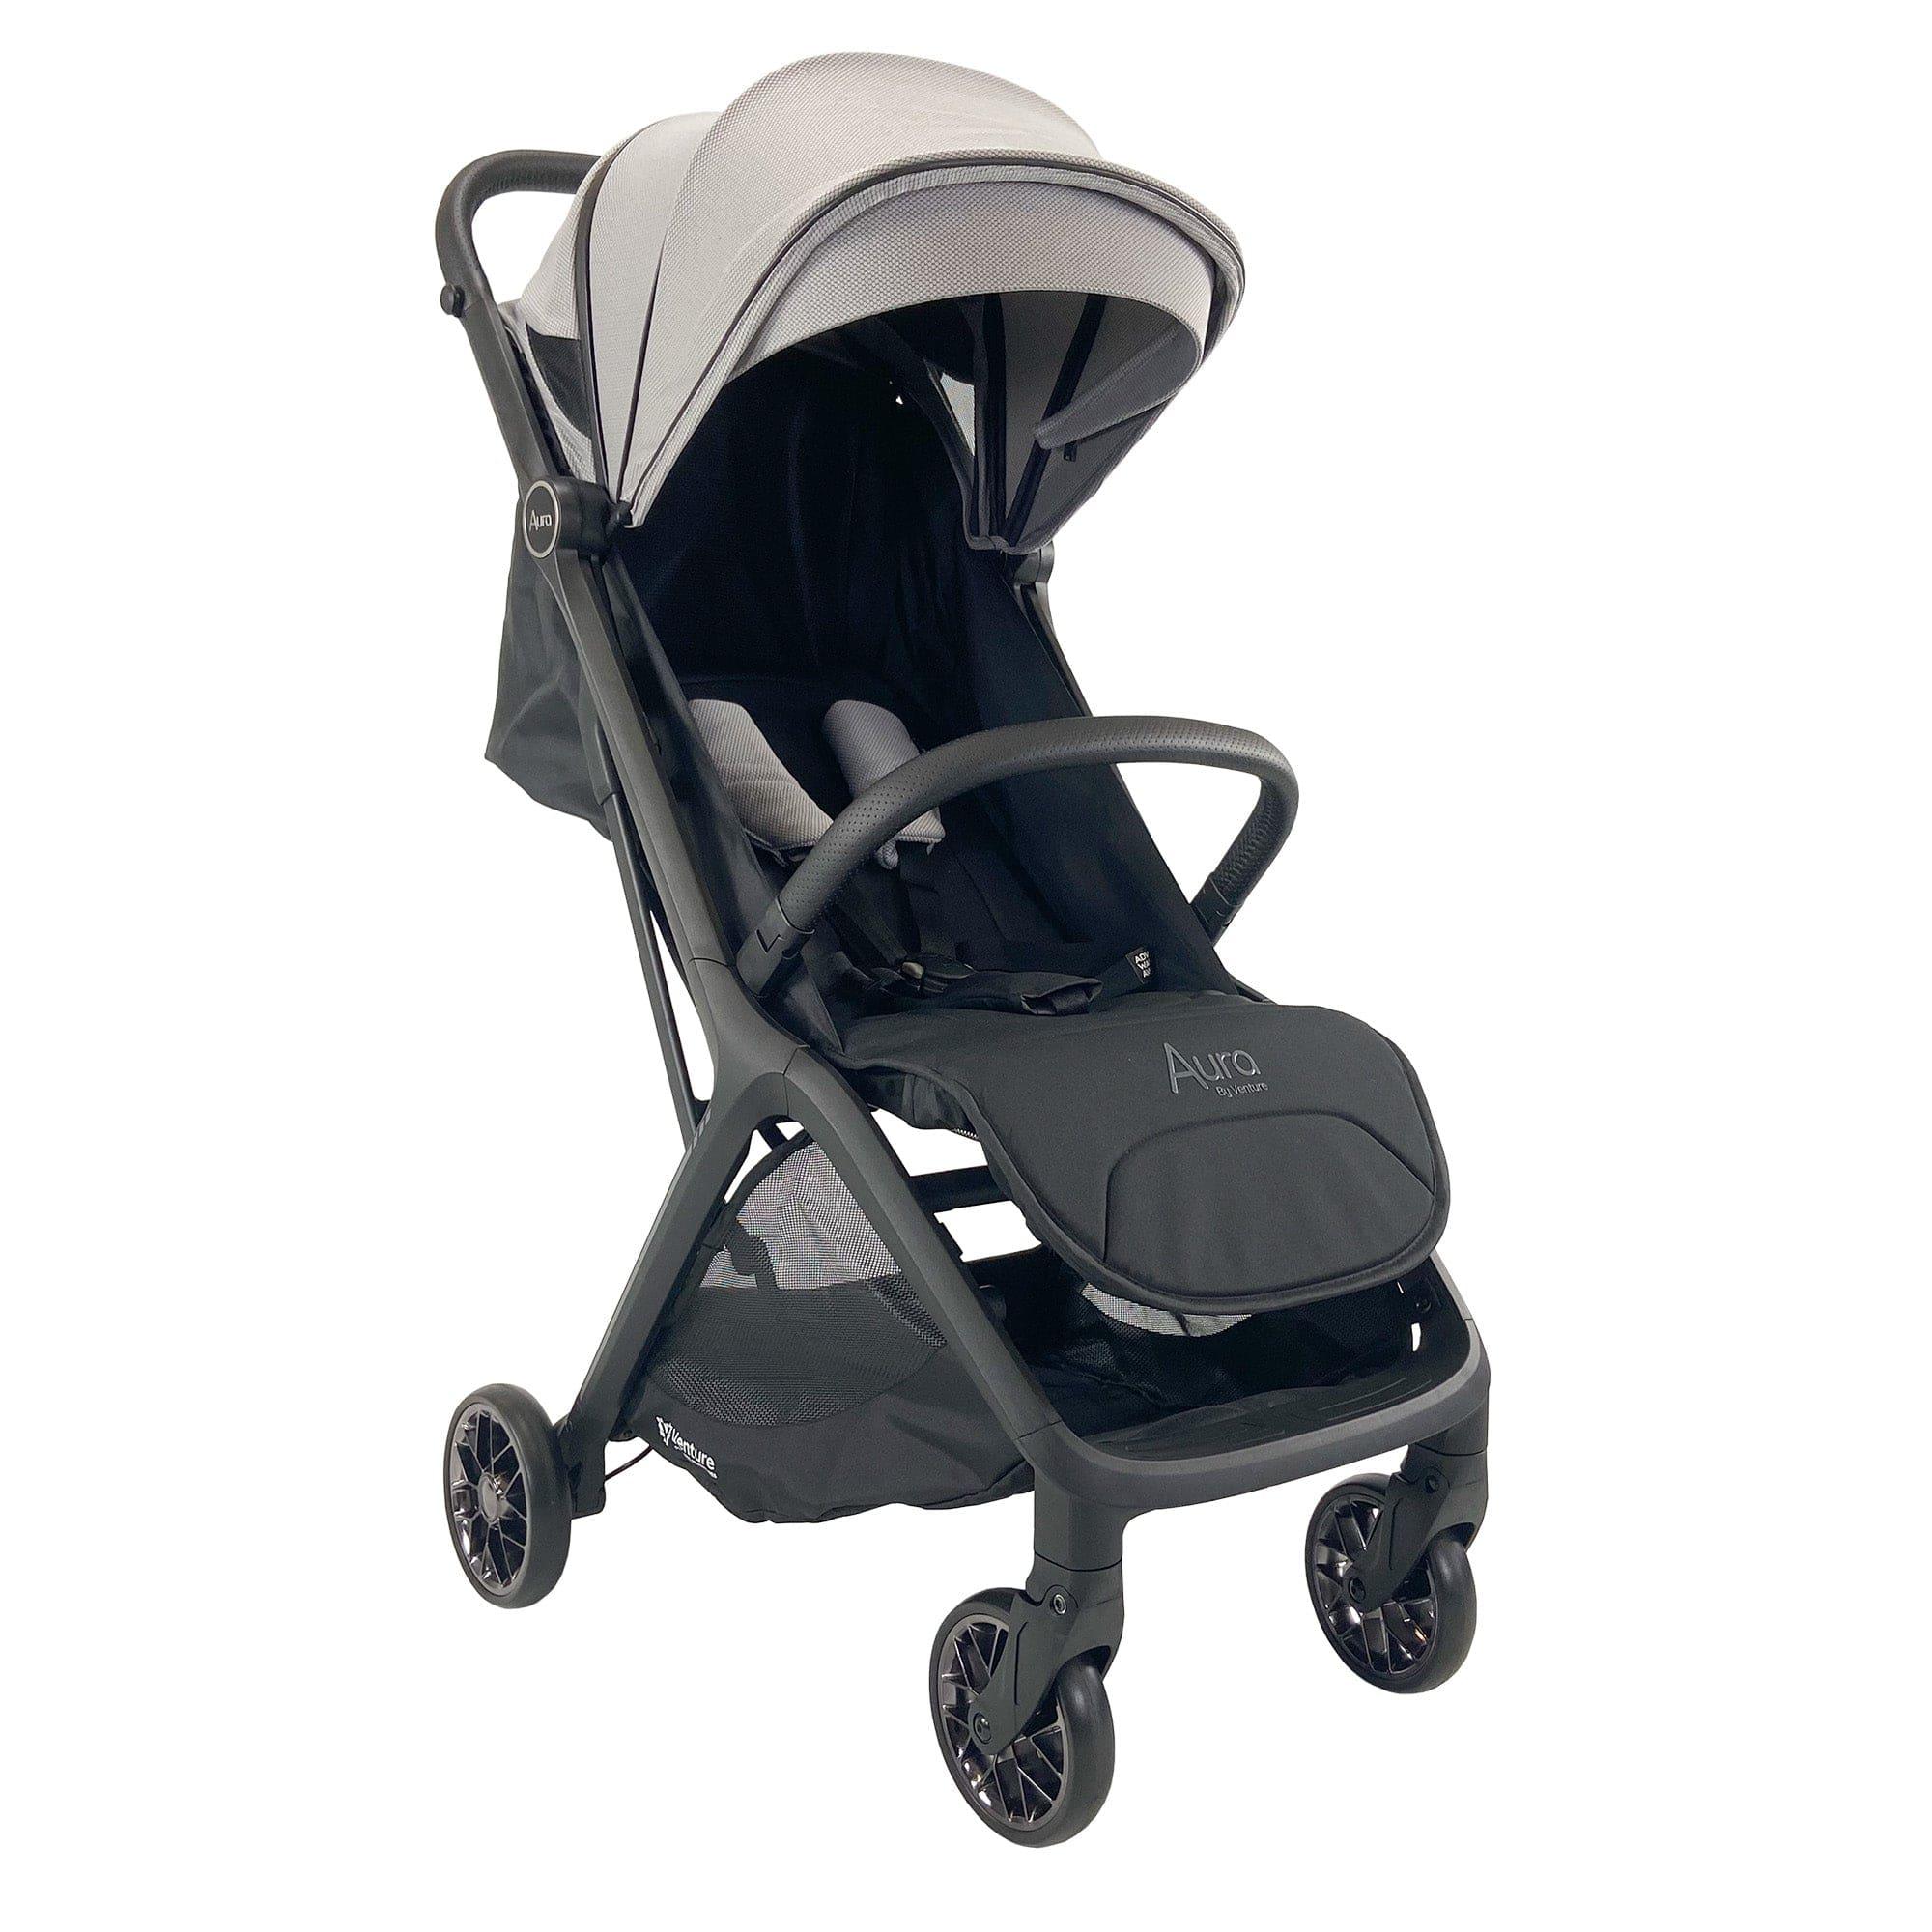 Venture Stroller Aura Lightweight Baby Stroller